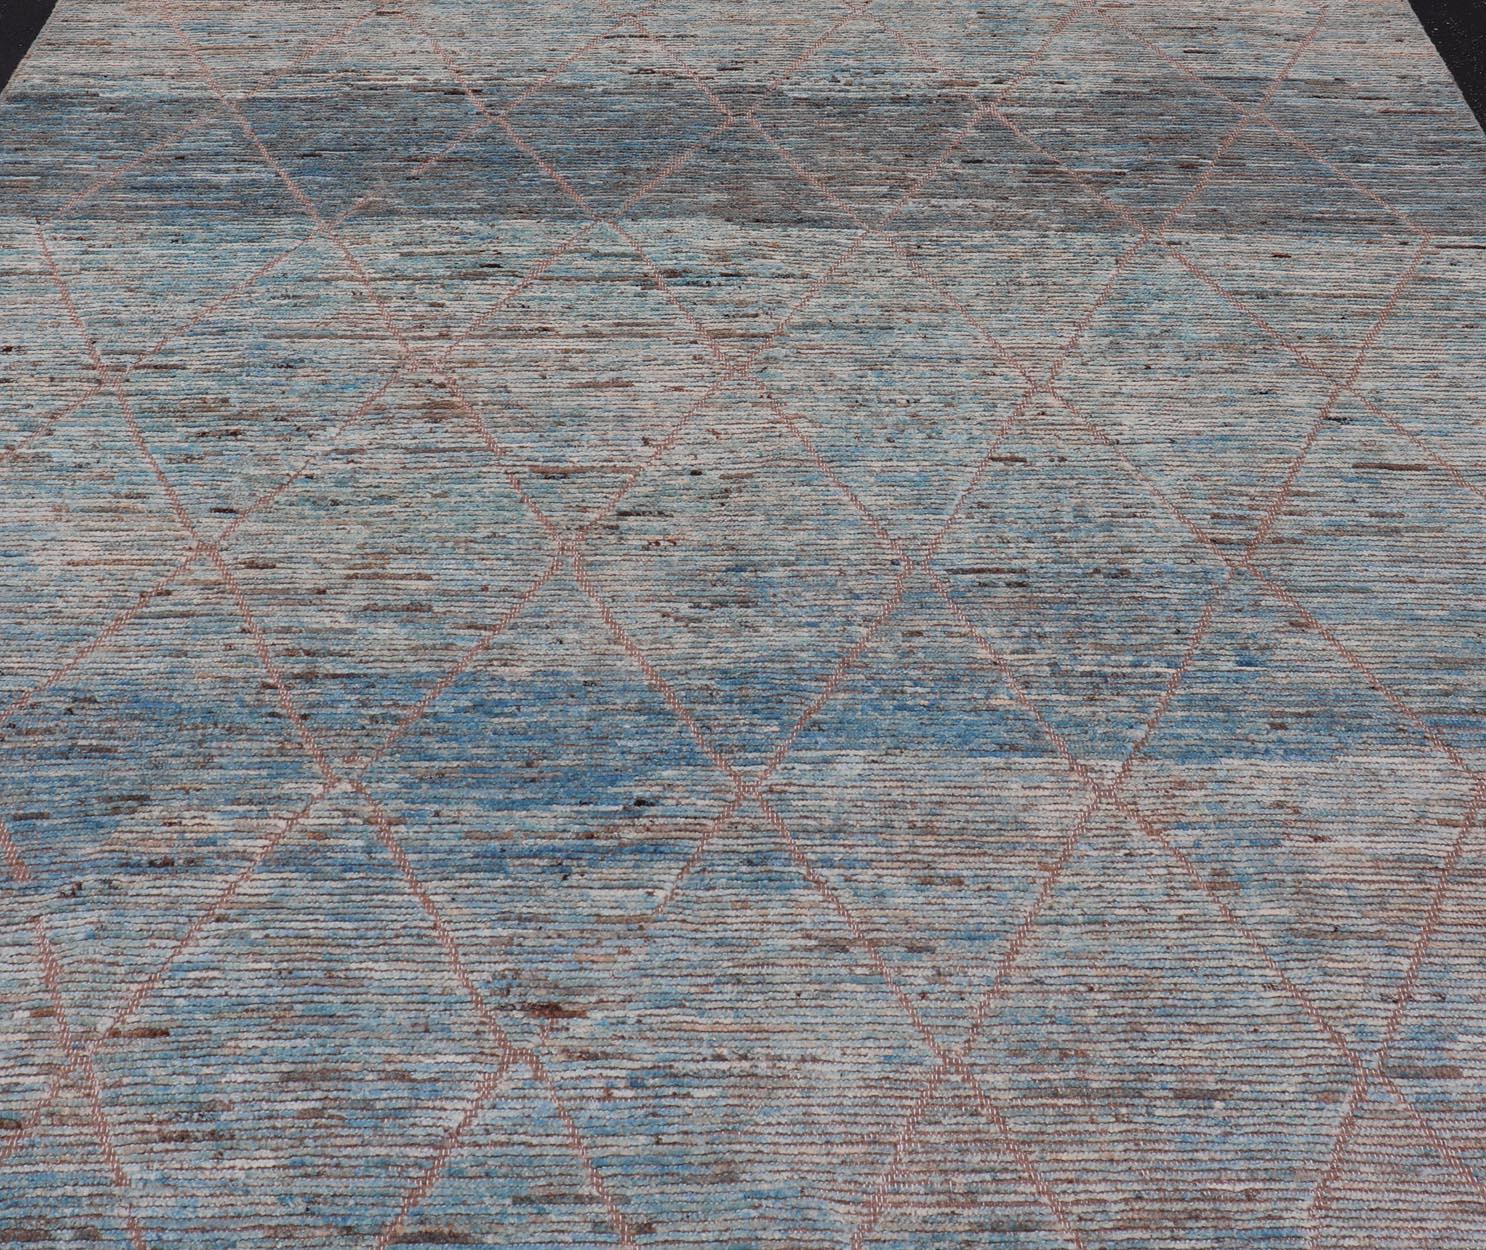 Moderner Tribal-Teppich aus Wolle mit subgeometrischem Design in Blau, Tan und Elfenbein. Keivan Woven Arts / Teppich SNK-2369, Herkunftsland / Art: Afghanistan / Modern Casual, etwa Anfang des 21. Jahrhunderts.
Maße: 9'4 x 11'4 
Dieser moderne,